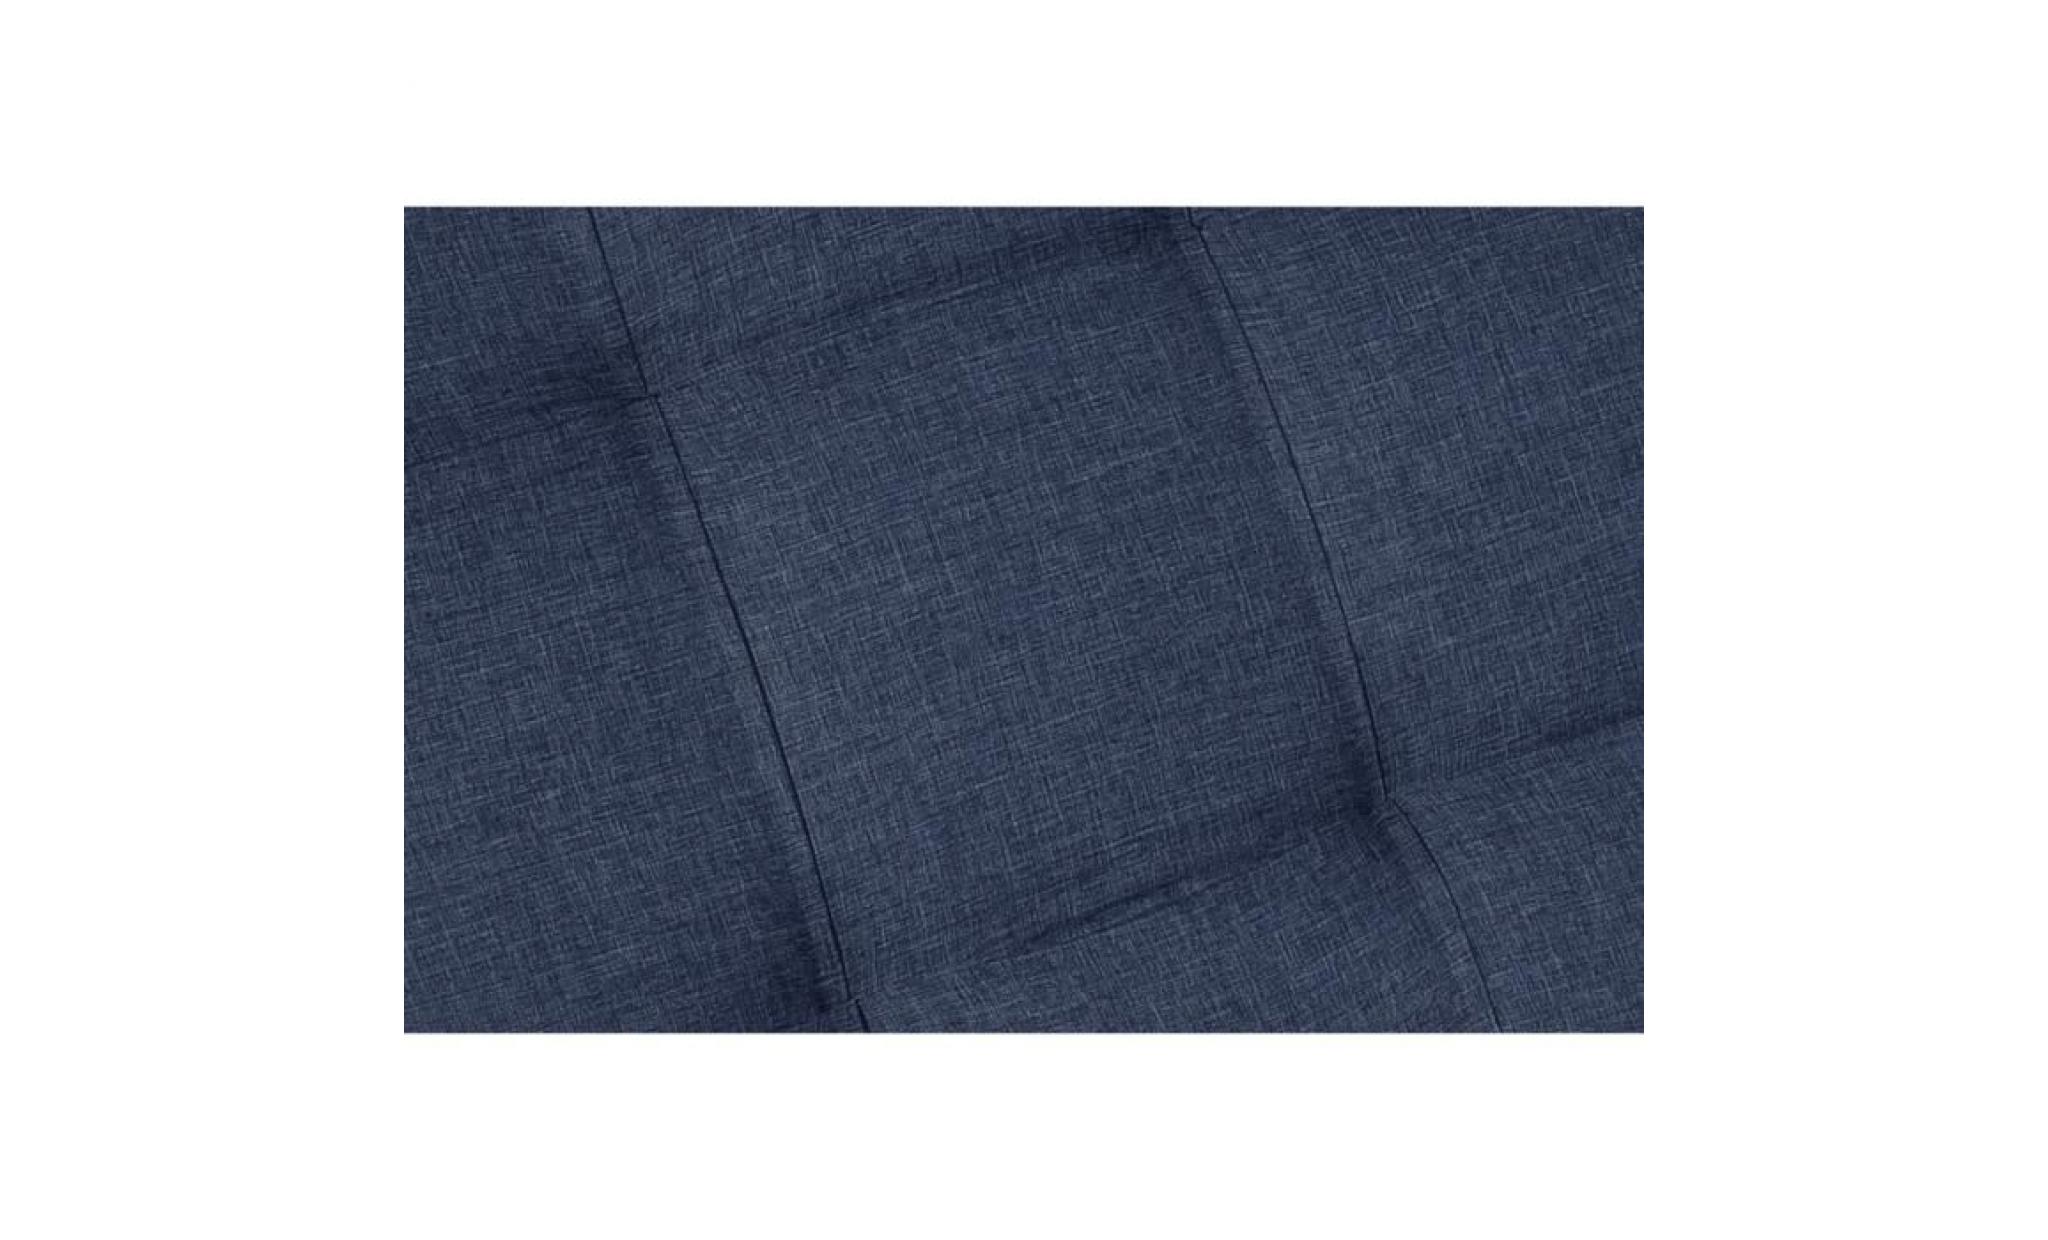 finlandek tête de lit kyna classique   tissu bleu denim   l 160 cm pas cher